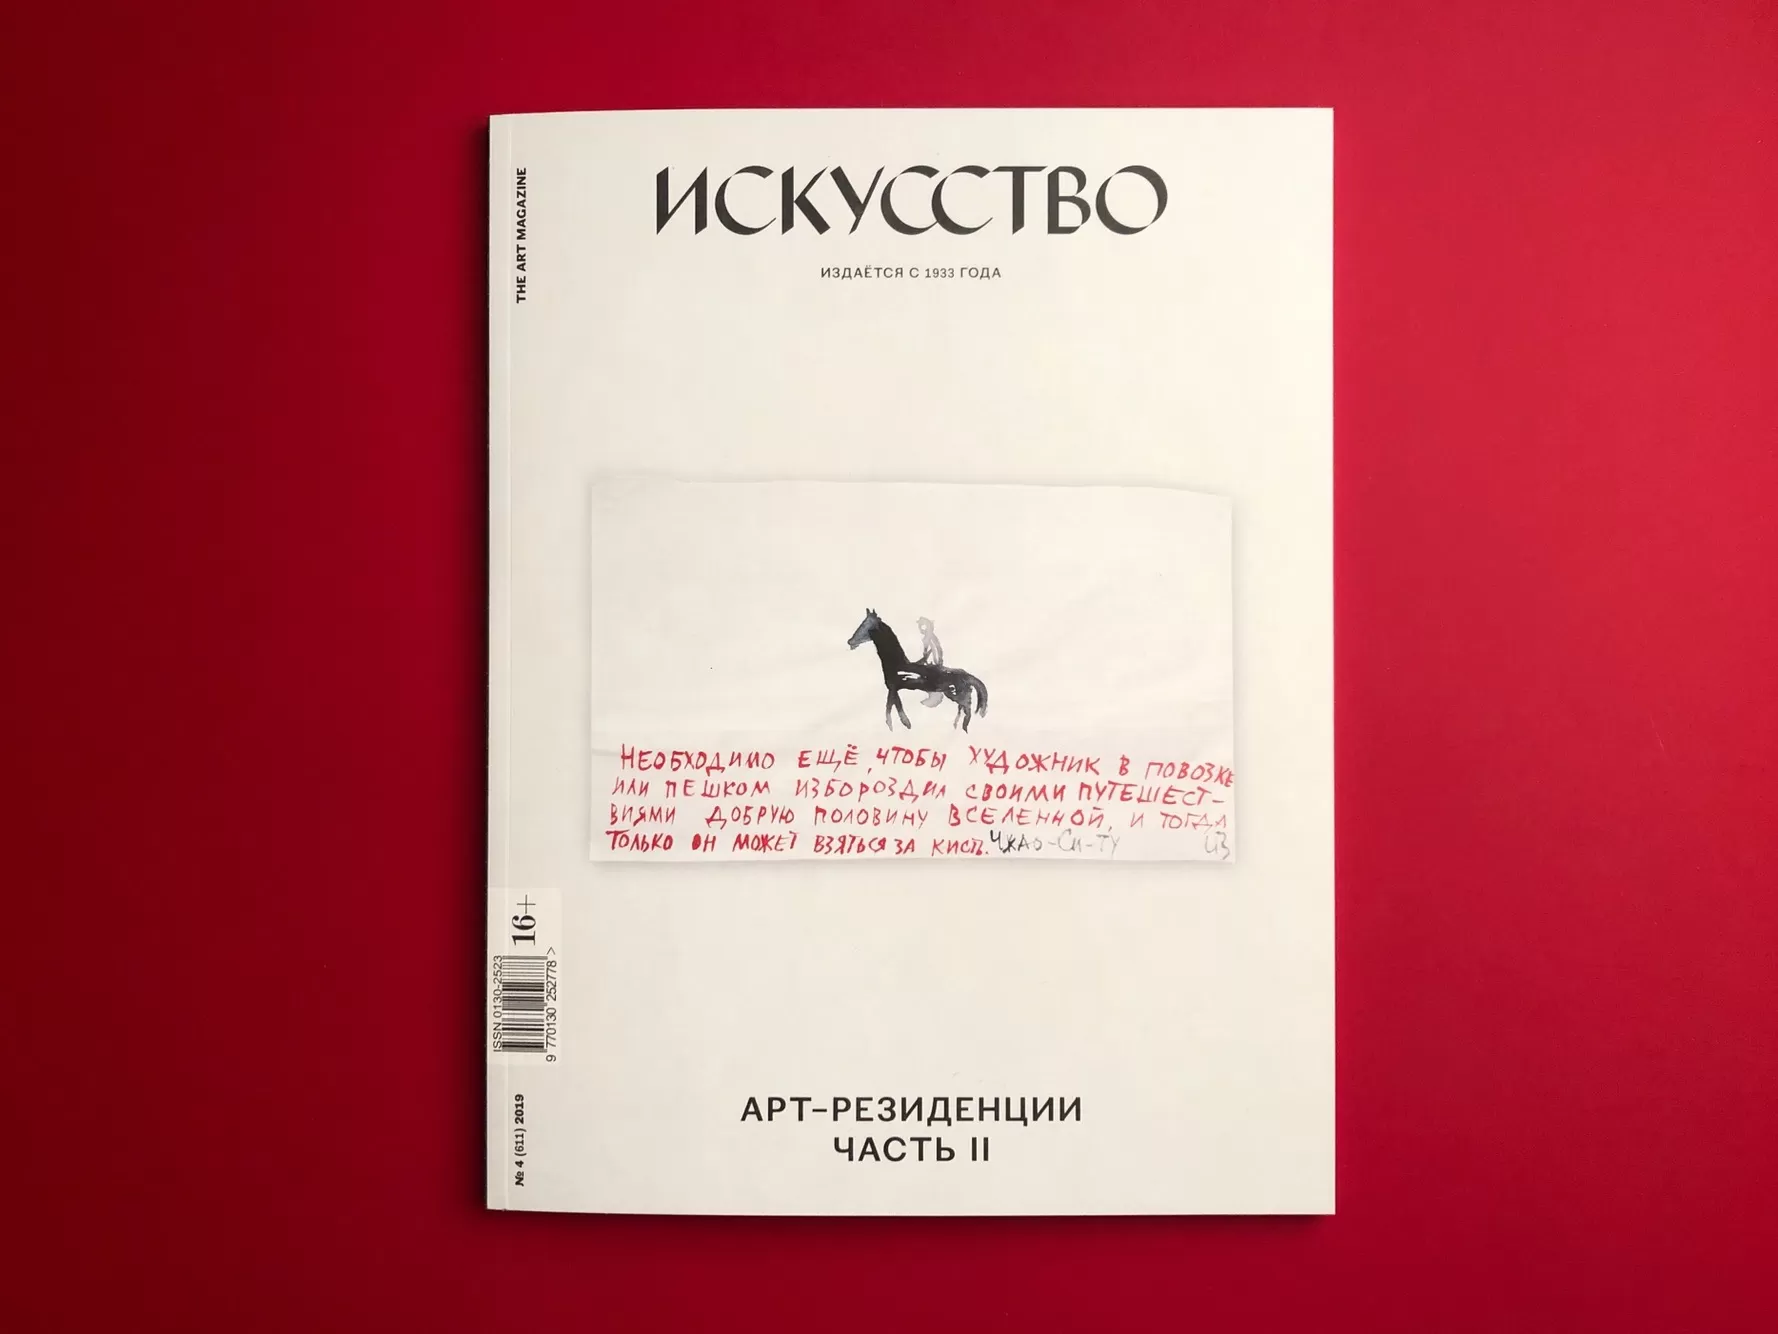 Журнал Искусство, выпуск 4 (2019 г.)